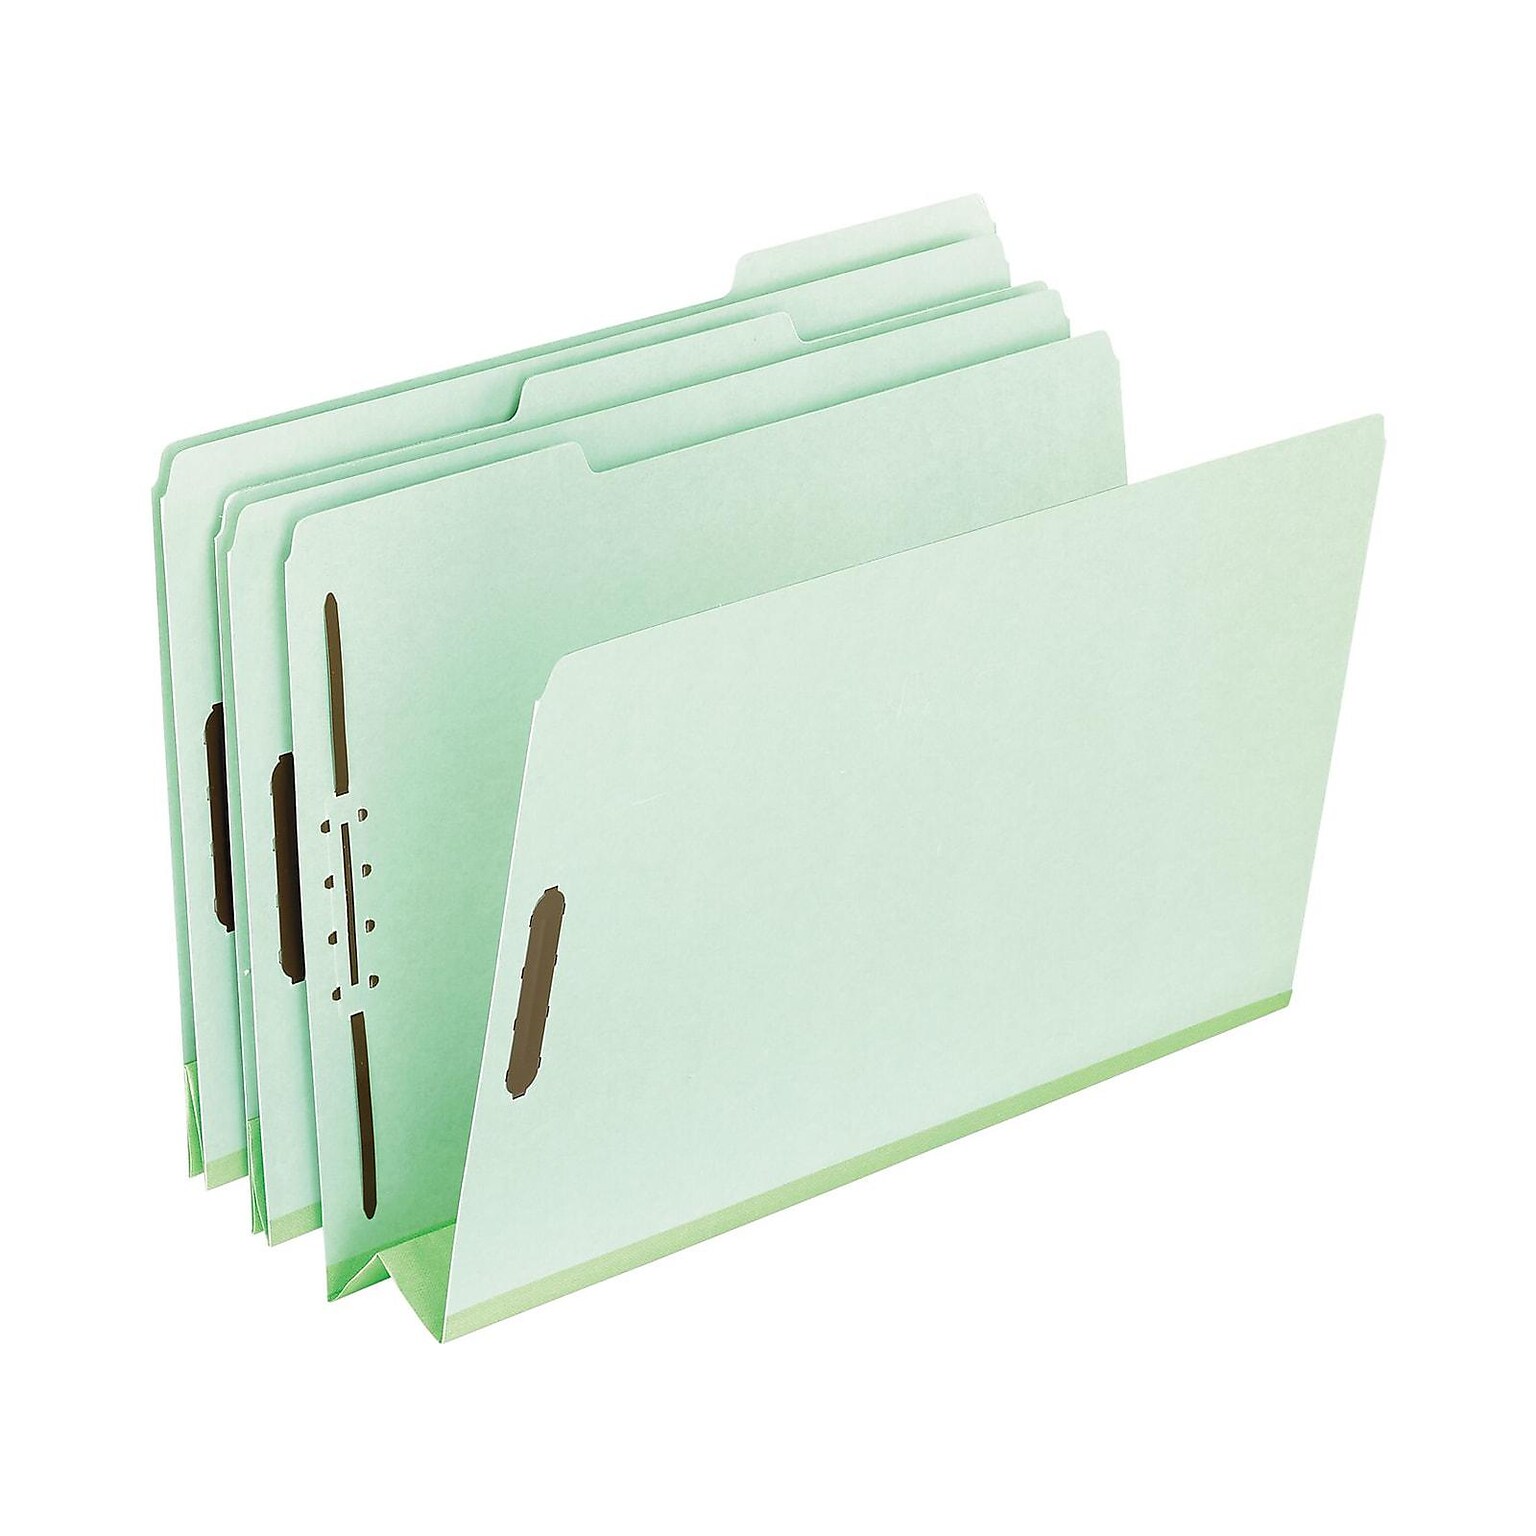 Pendaflex Heavy-Duty Pressboard Classification Folders, Letter Size, Leaf Green, 25/Box (PFX17182)